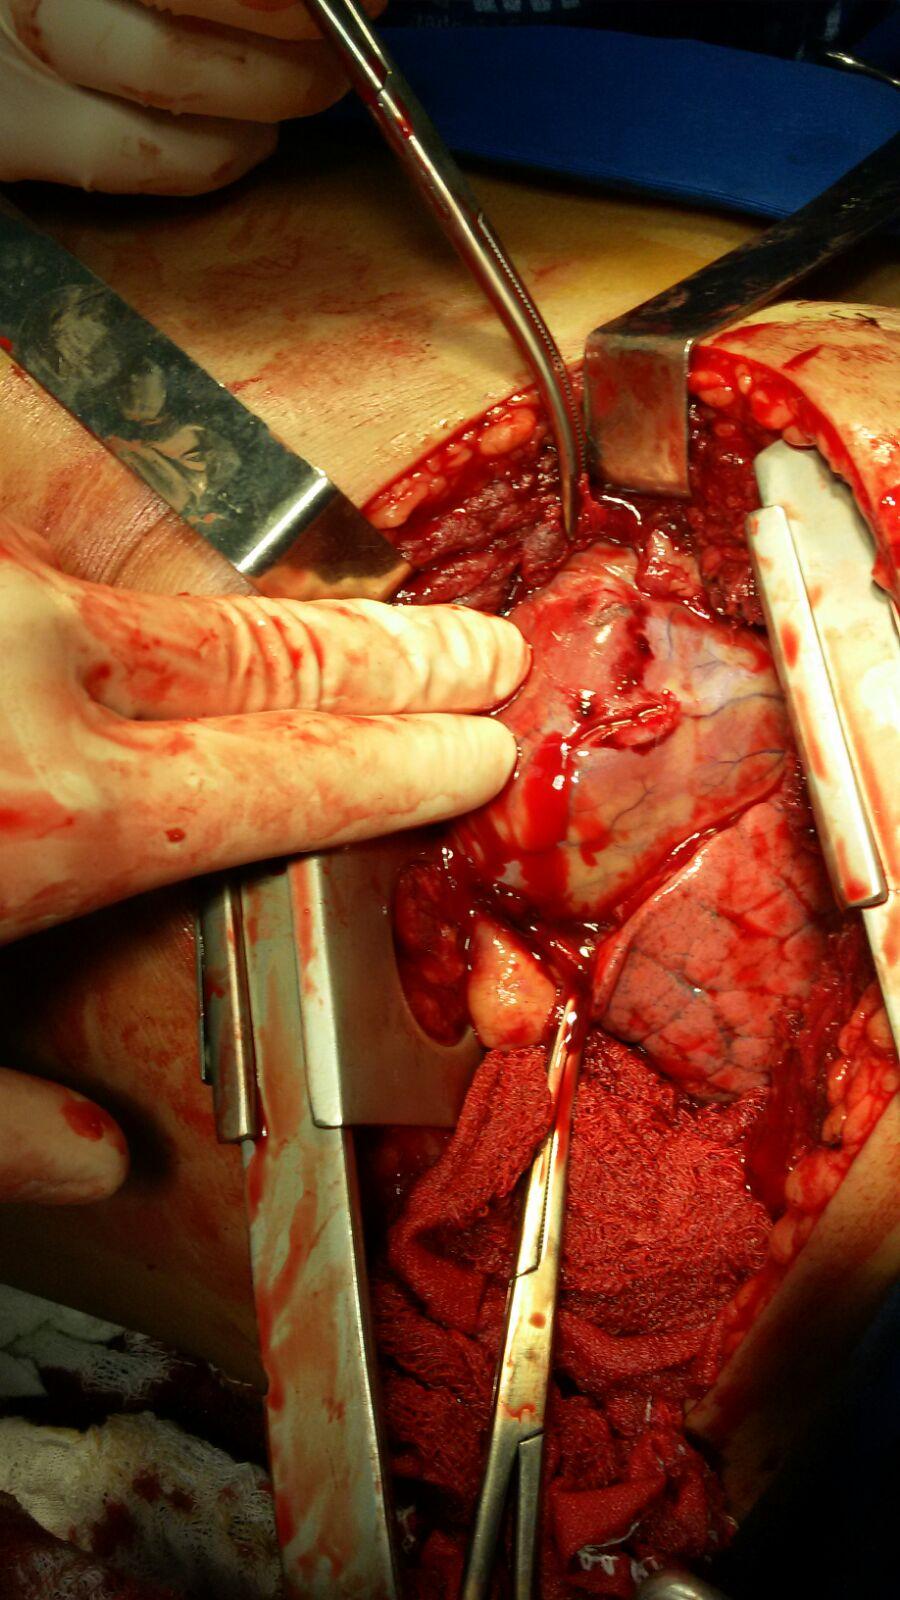 Somente 15 a 30% das lesões penetrantes necessitam de tratamento cirúrgico (toracoscopia ou toracotomia).